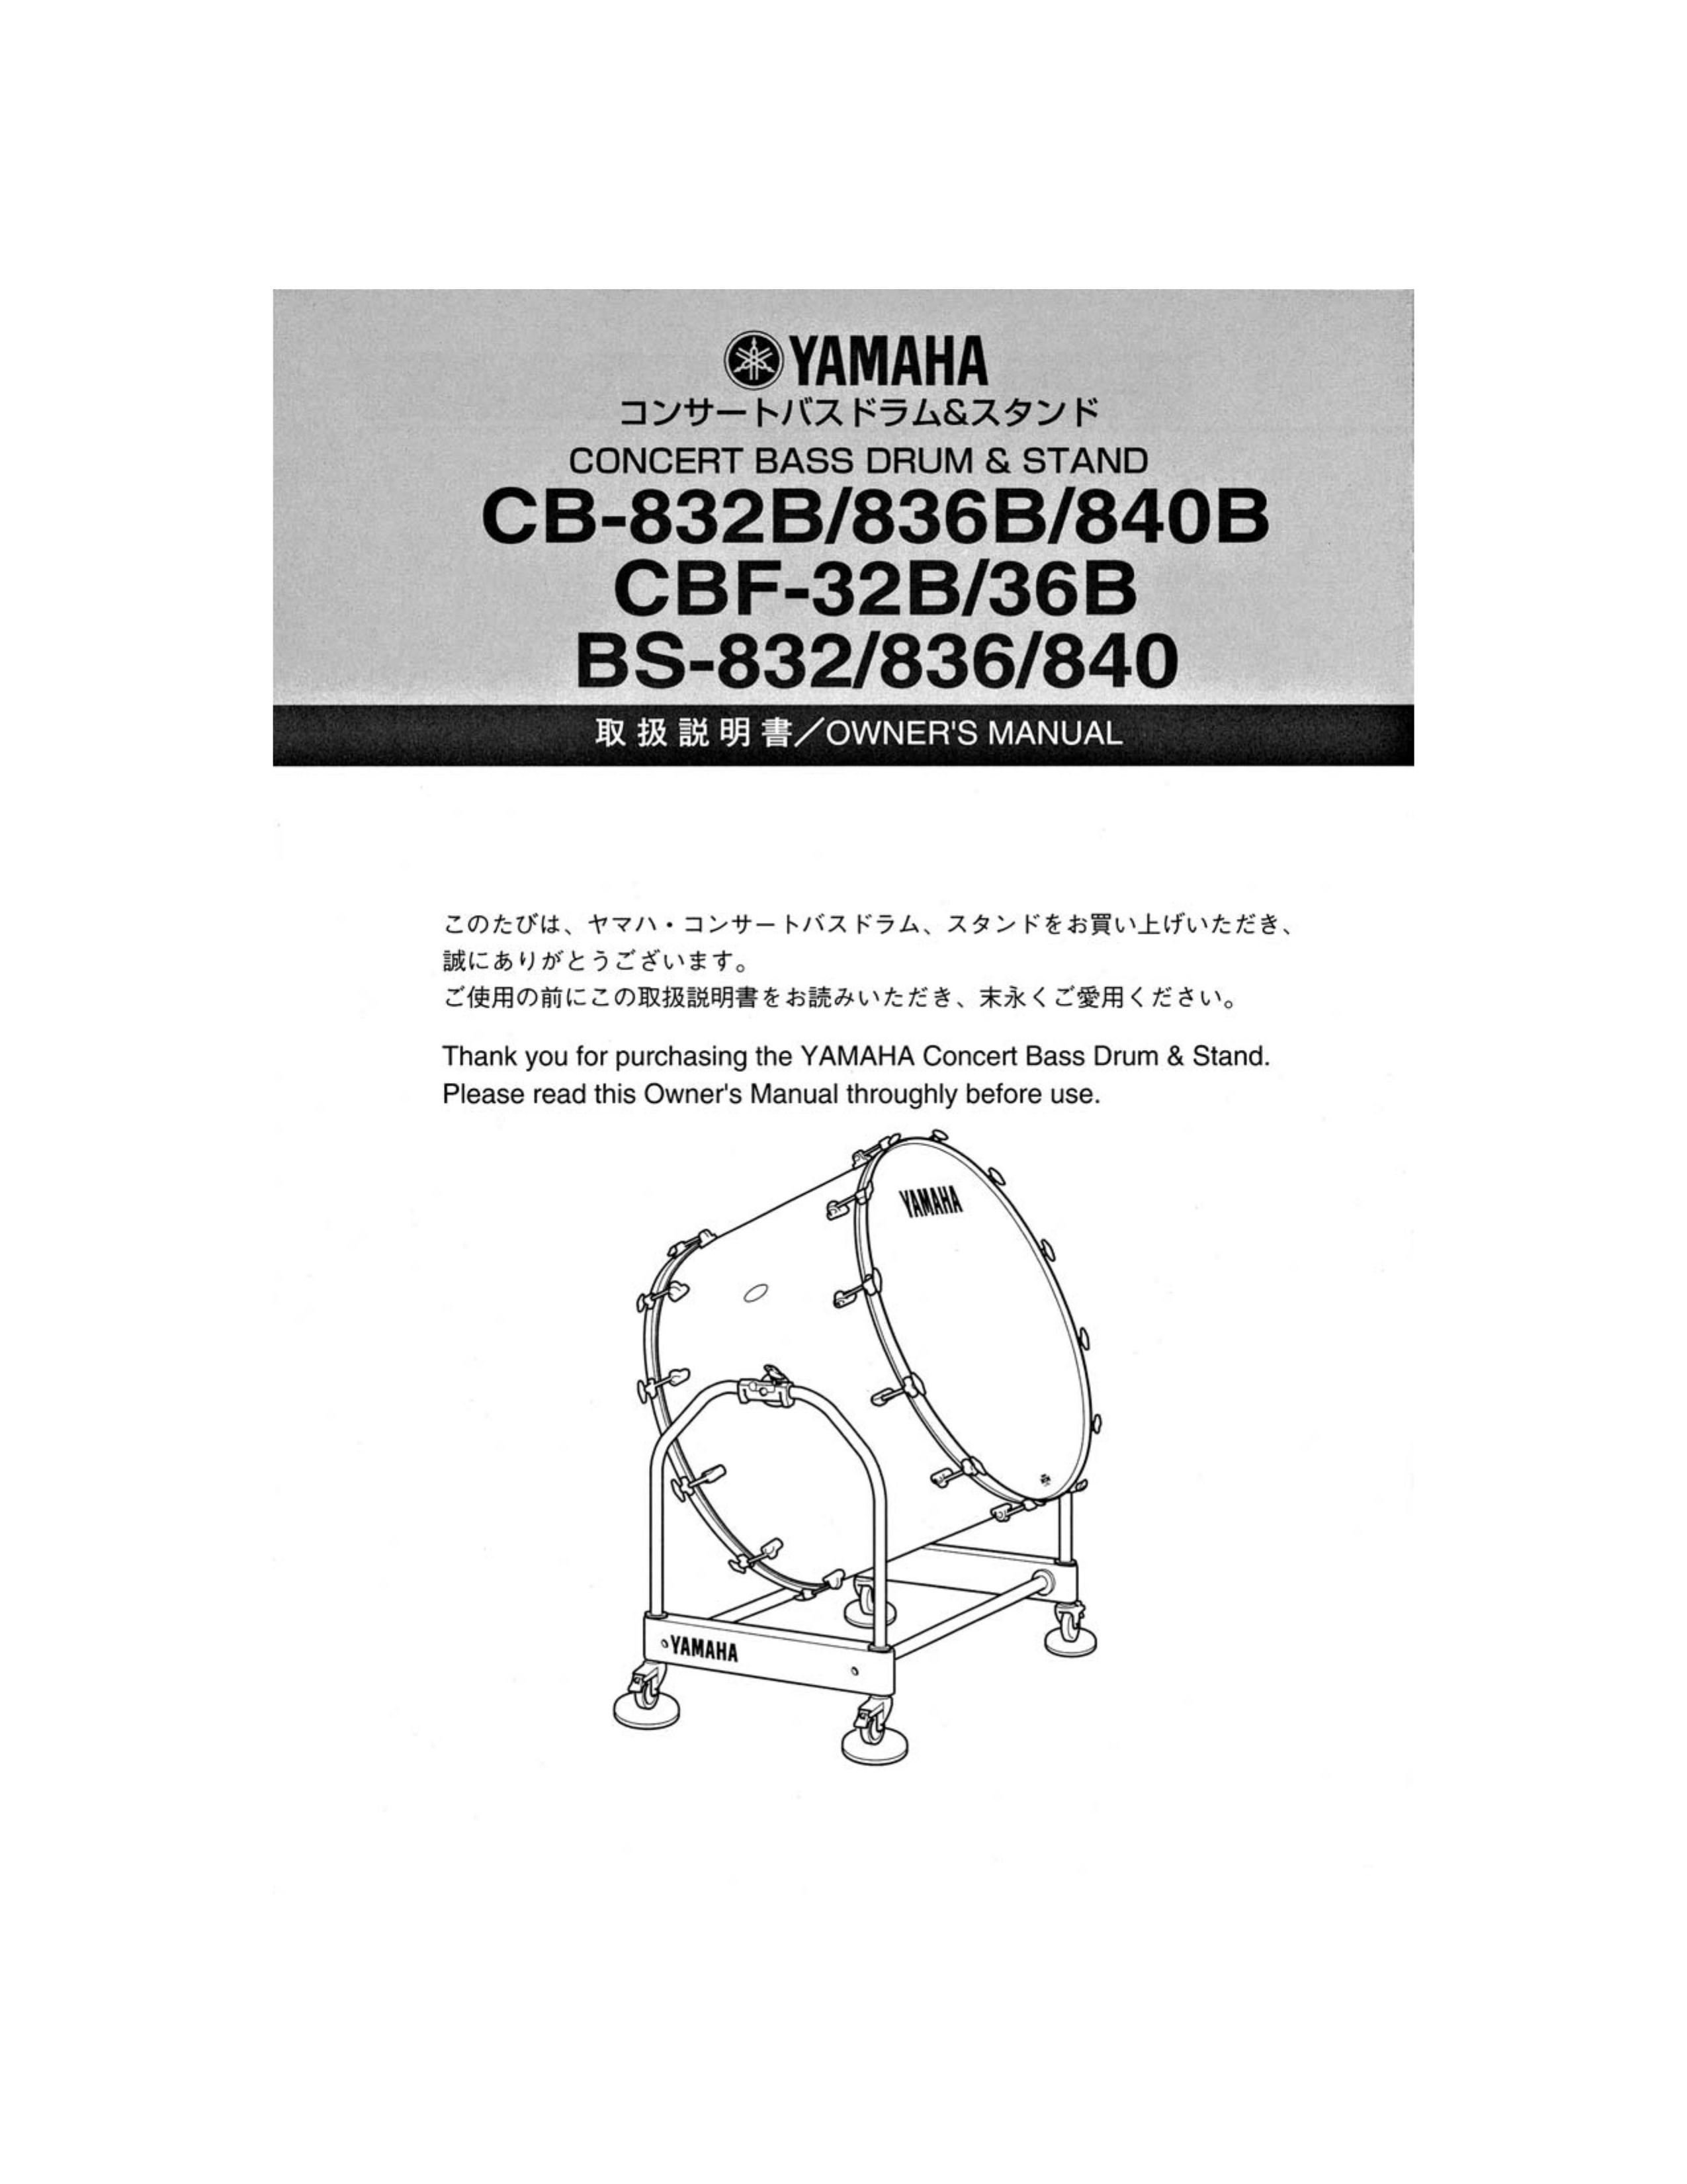 Yamaha CB-832B Drums User Manual